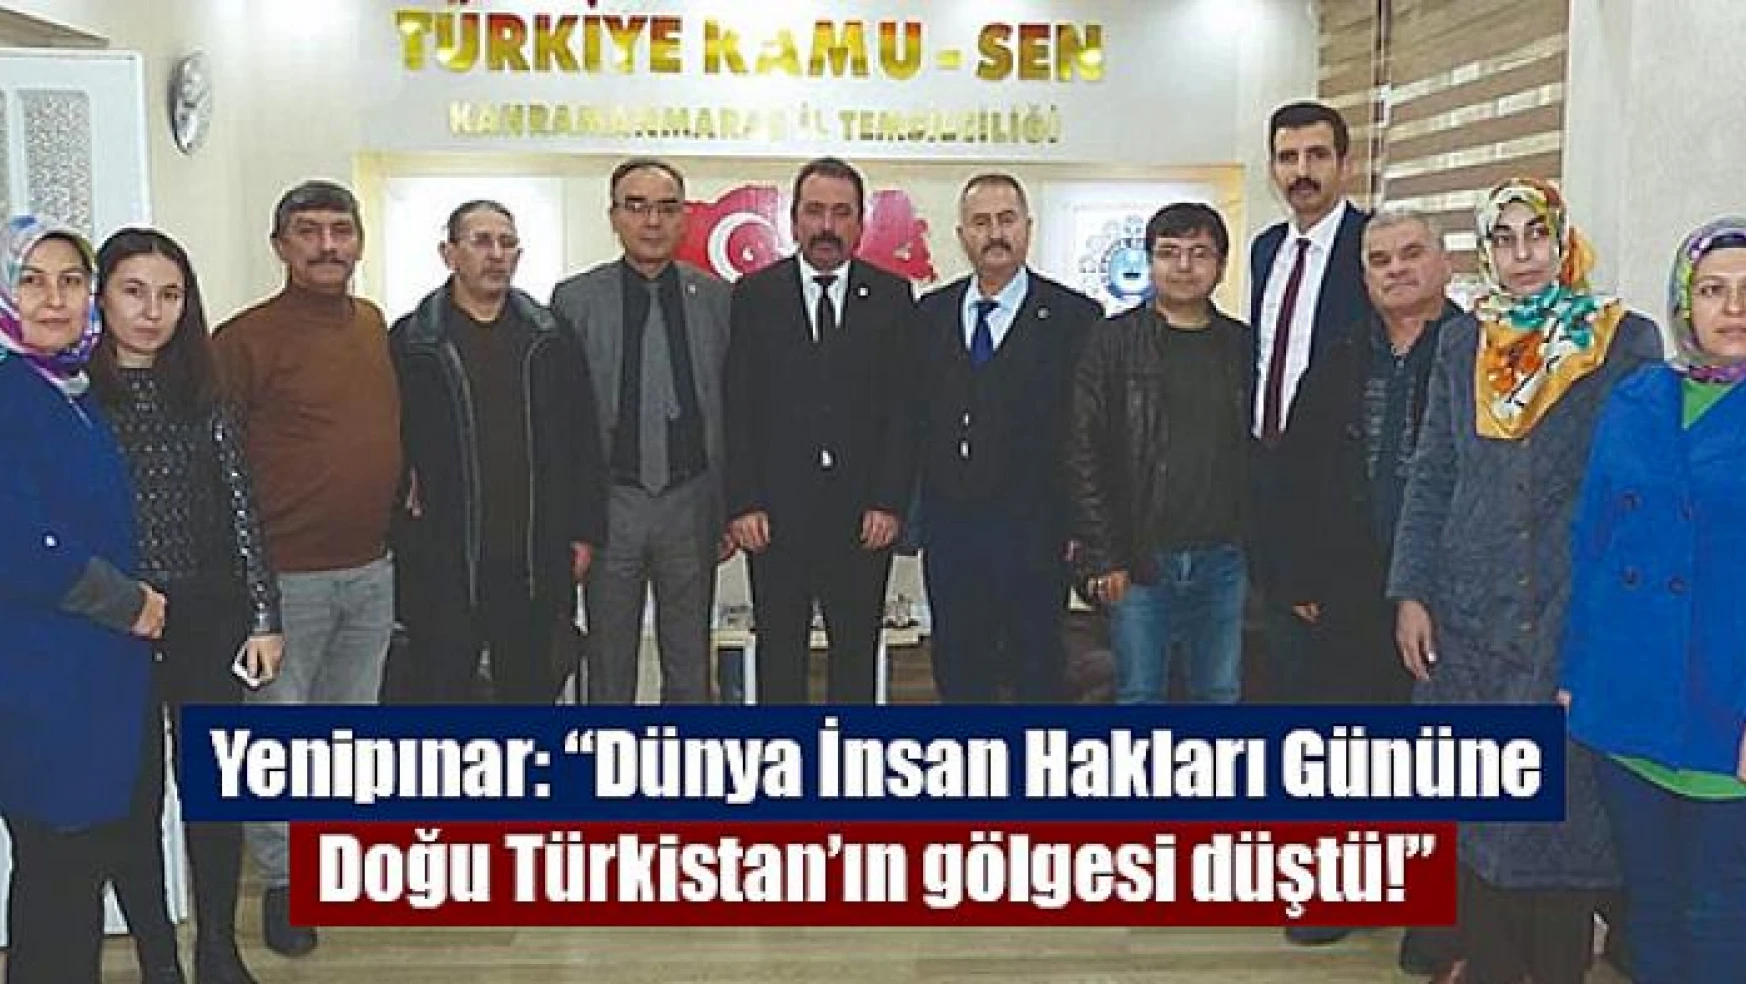 Yenipınar: 'Dünya İnsan Hakları Gününe Doğu Türkistan'ın gölgesi düştü!'